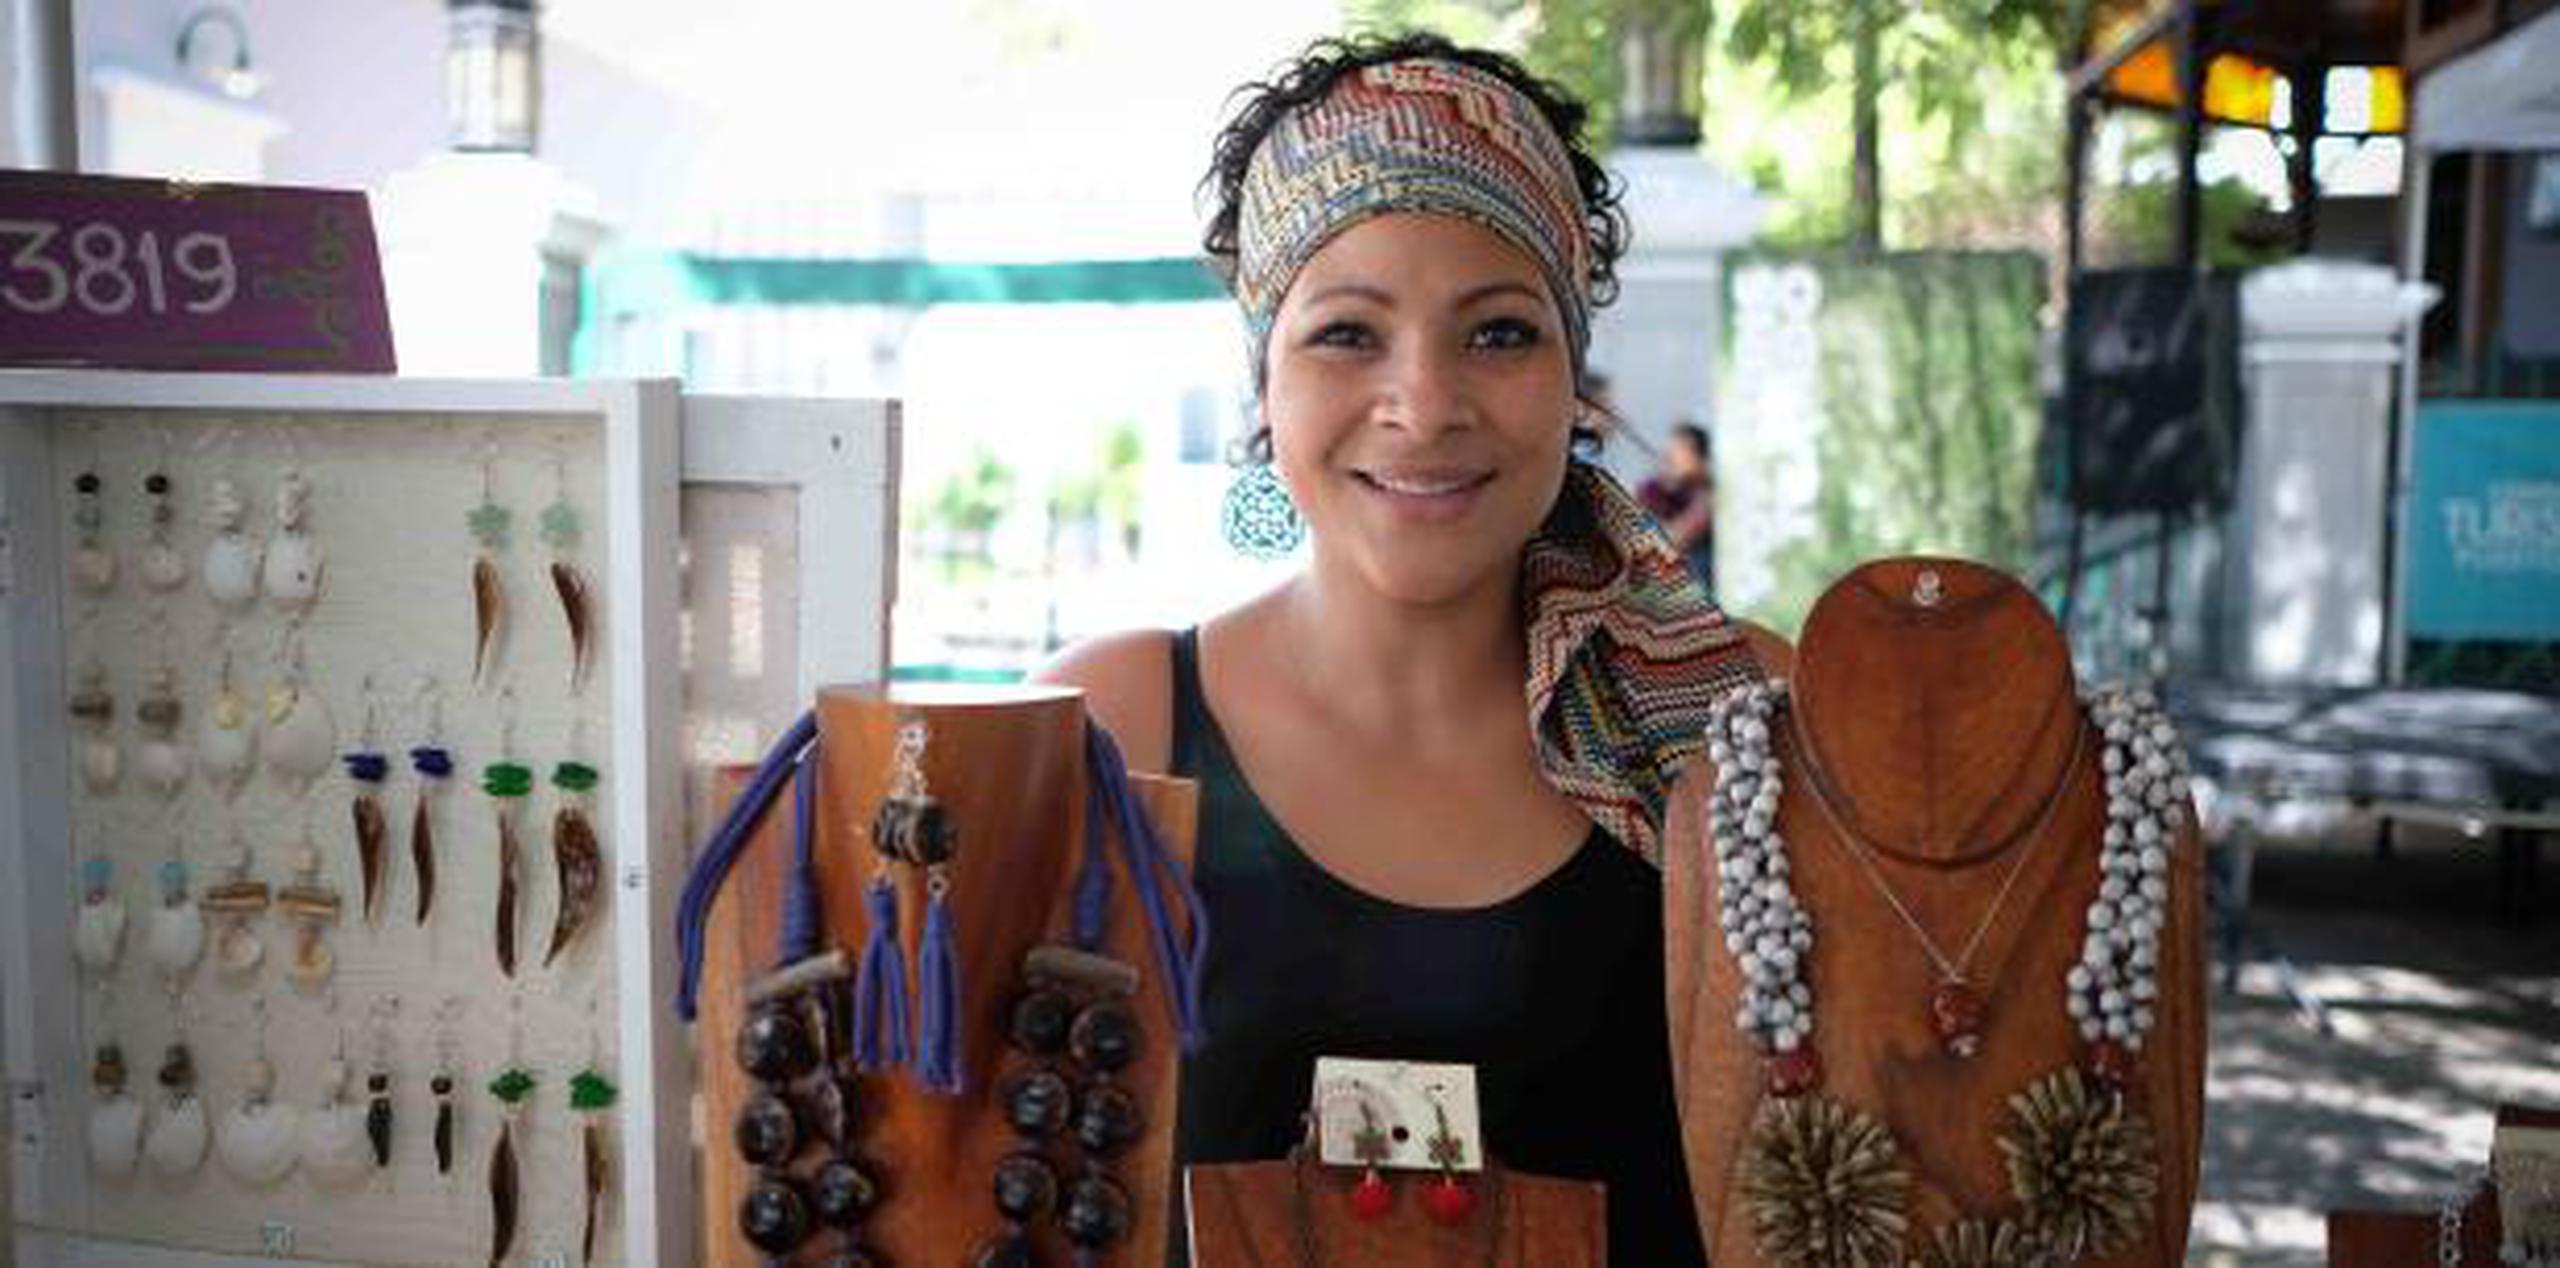 La artesana ponceña Yadira Rosado, una de las que inauguró ayer las fiestas, exhibe en el Paseo de la Princesa.  (Especial GFR Media/ Ricky Reyes Vázquez)